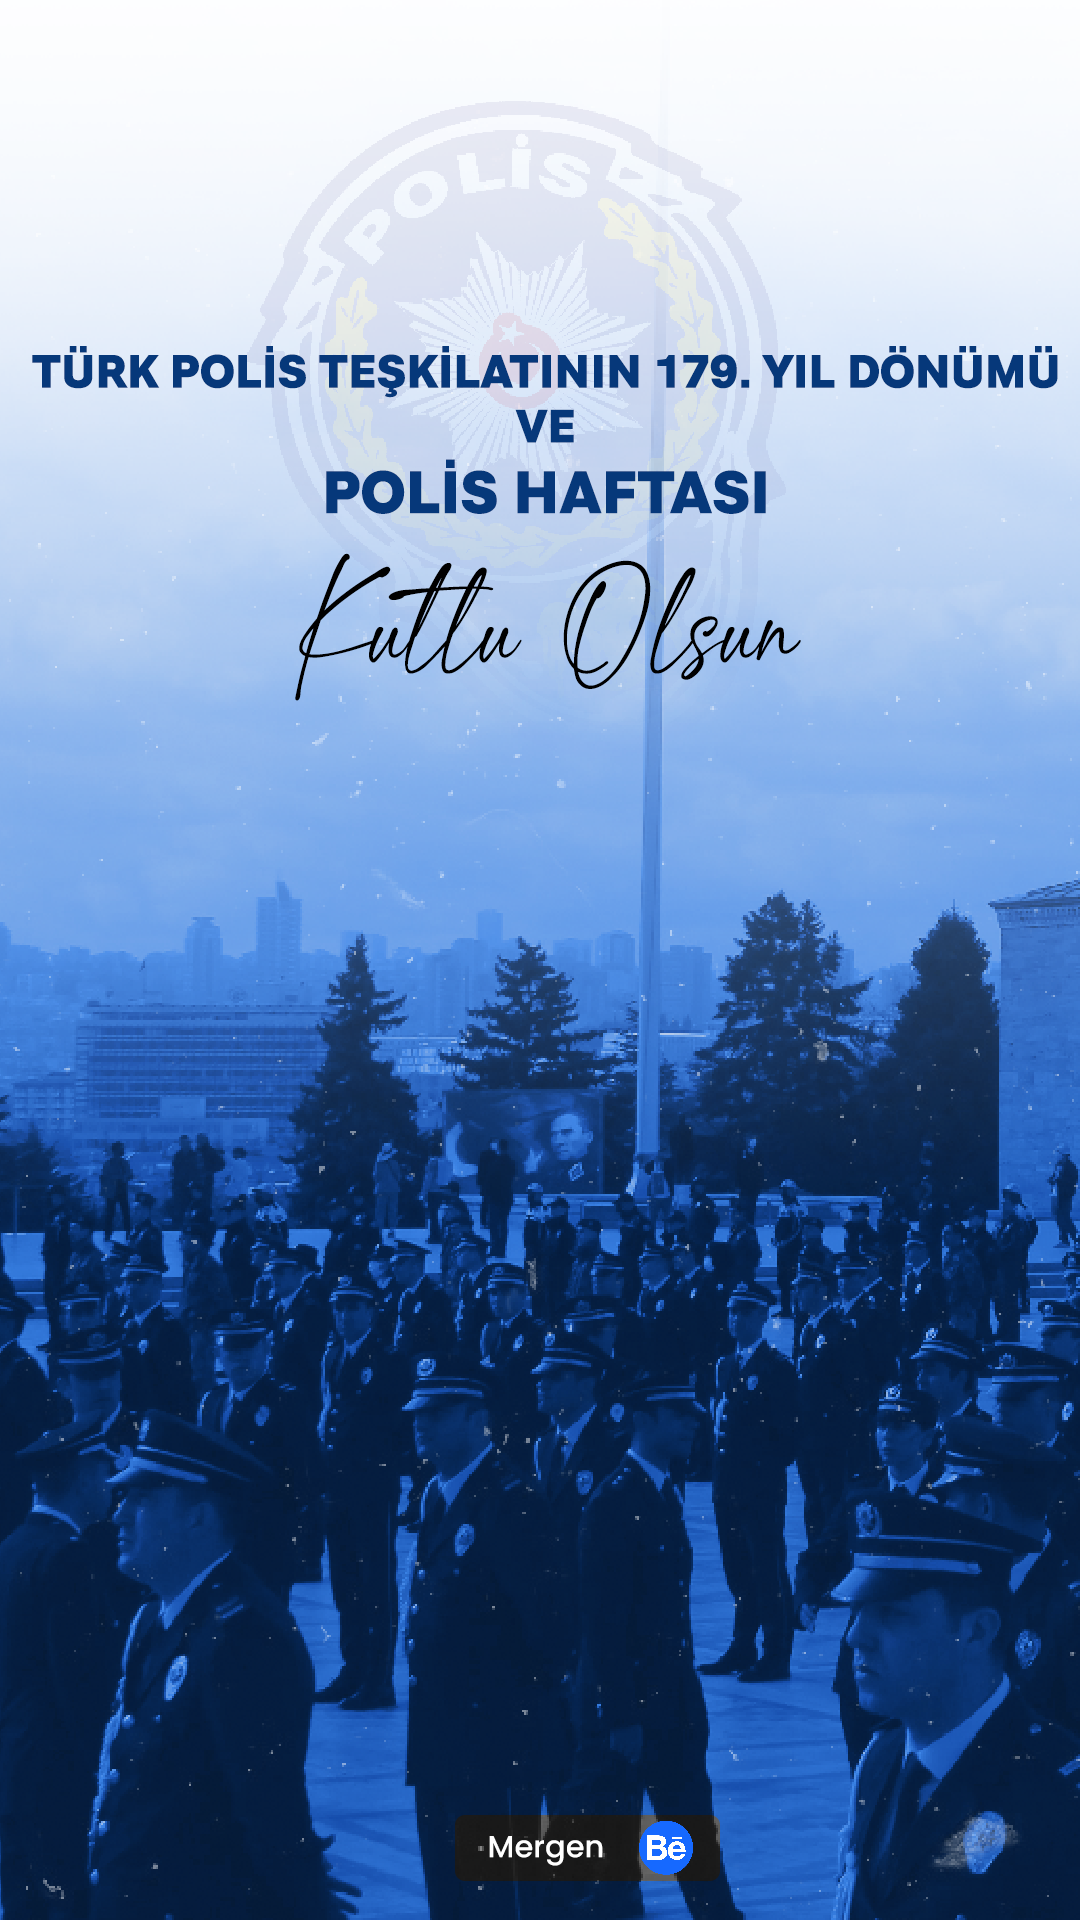 polis haftası medya tasarım график Afiş reklam photoshop türkiye 10 Nisan sosyal media tasarımı